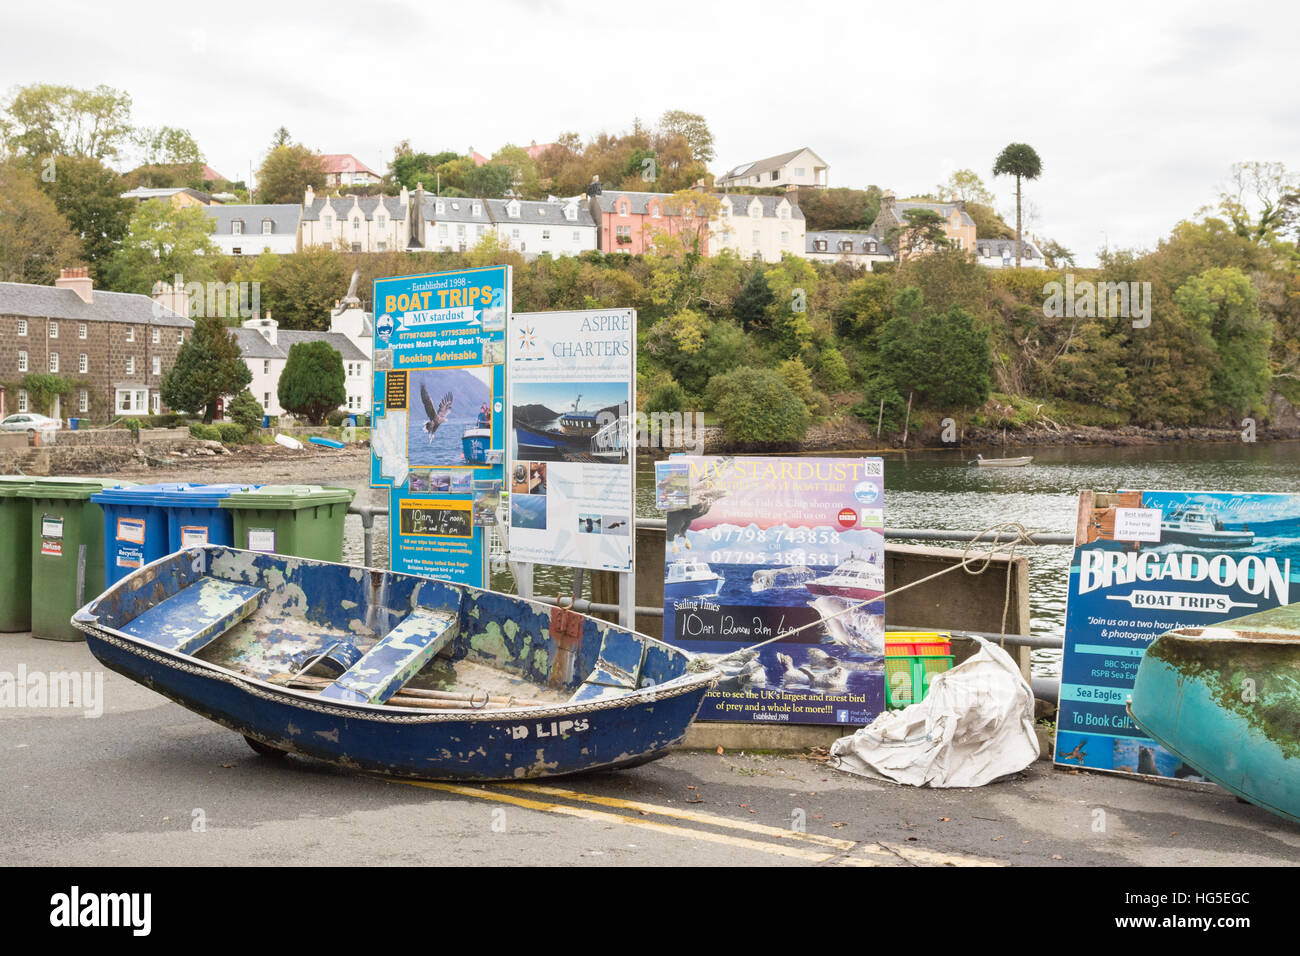 Portree Hafen Tourismus Schilder Werbung Bootsfahrten, Isle Of Skye, Schottland, UK Stockfoto